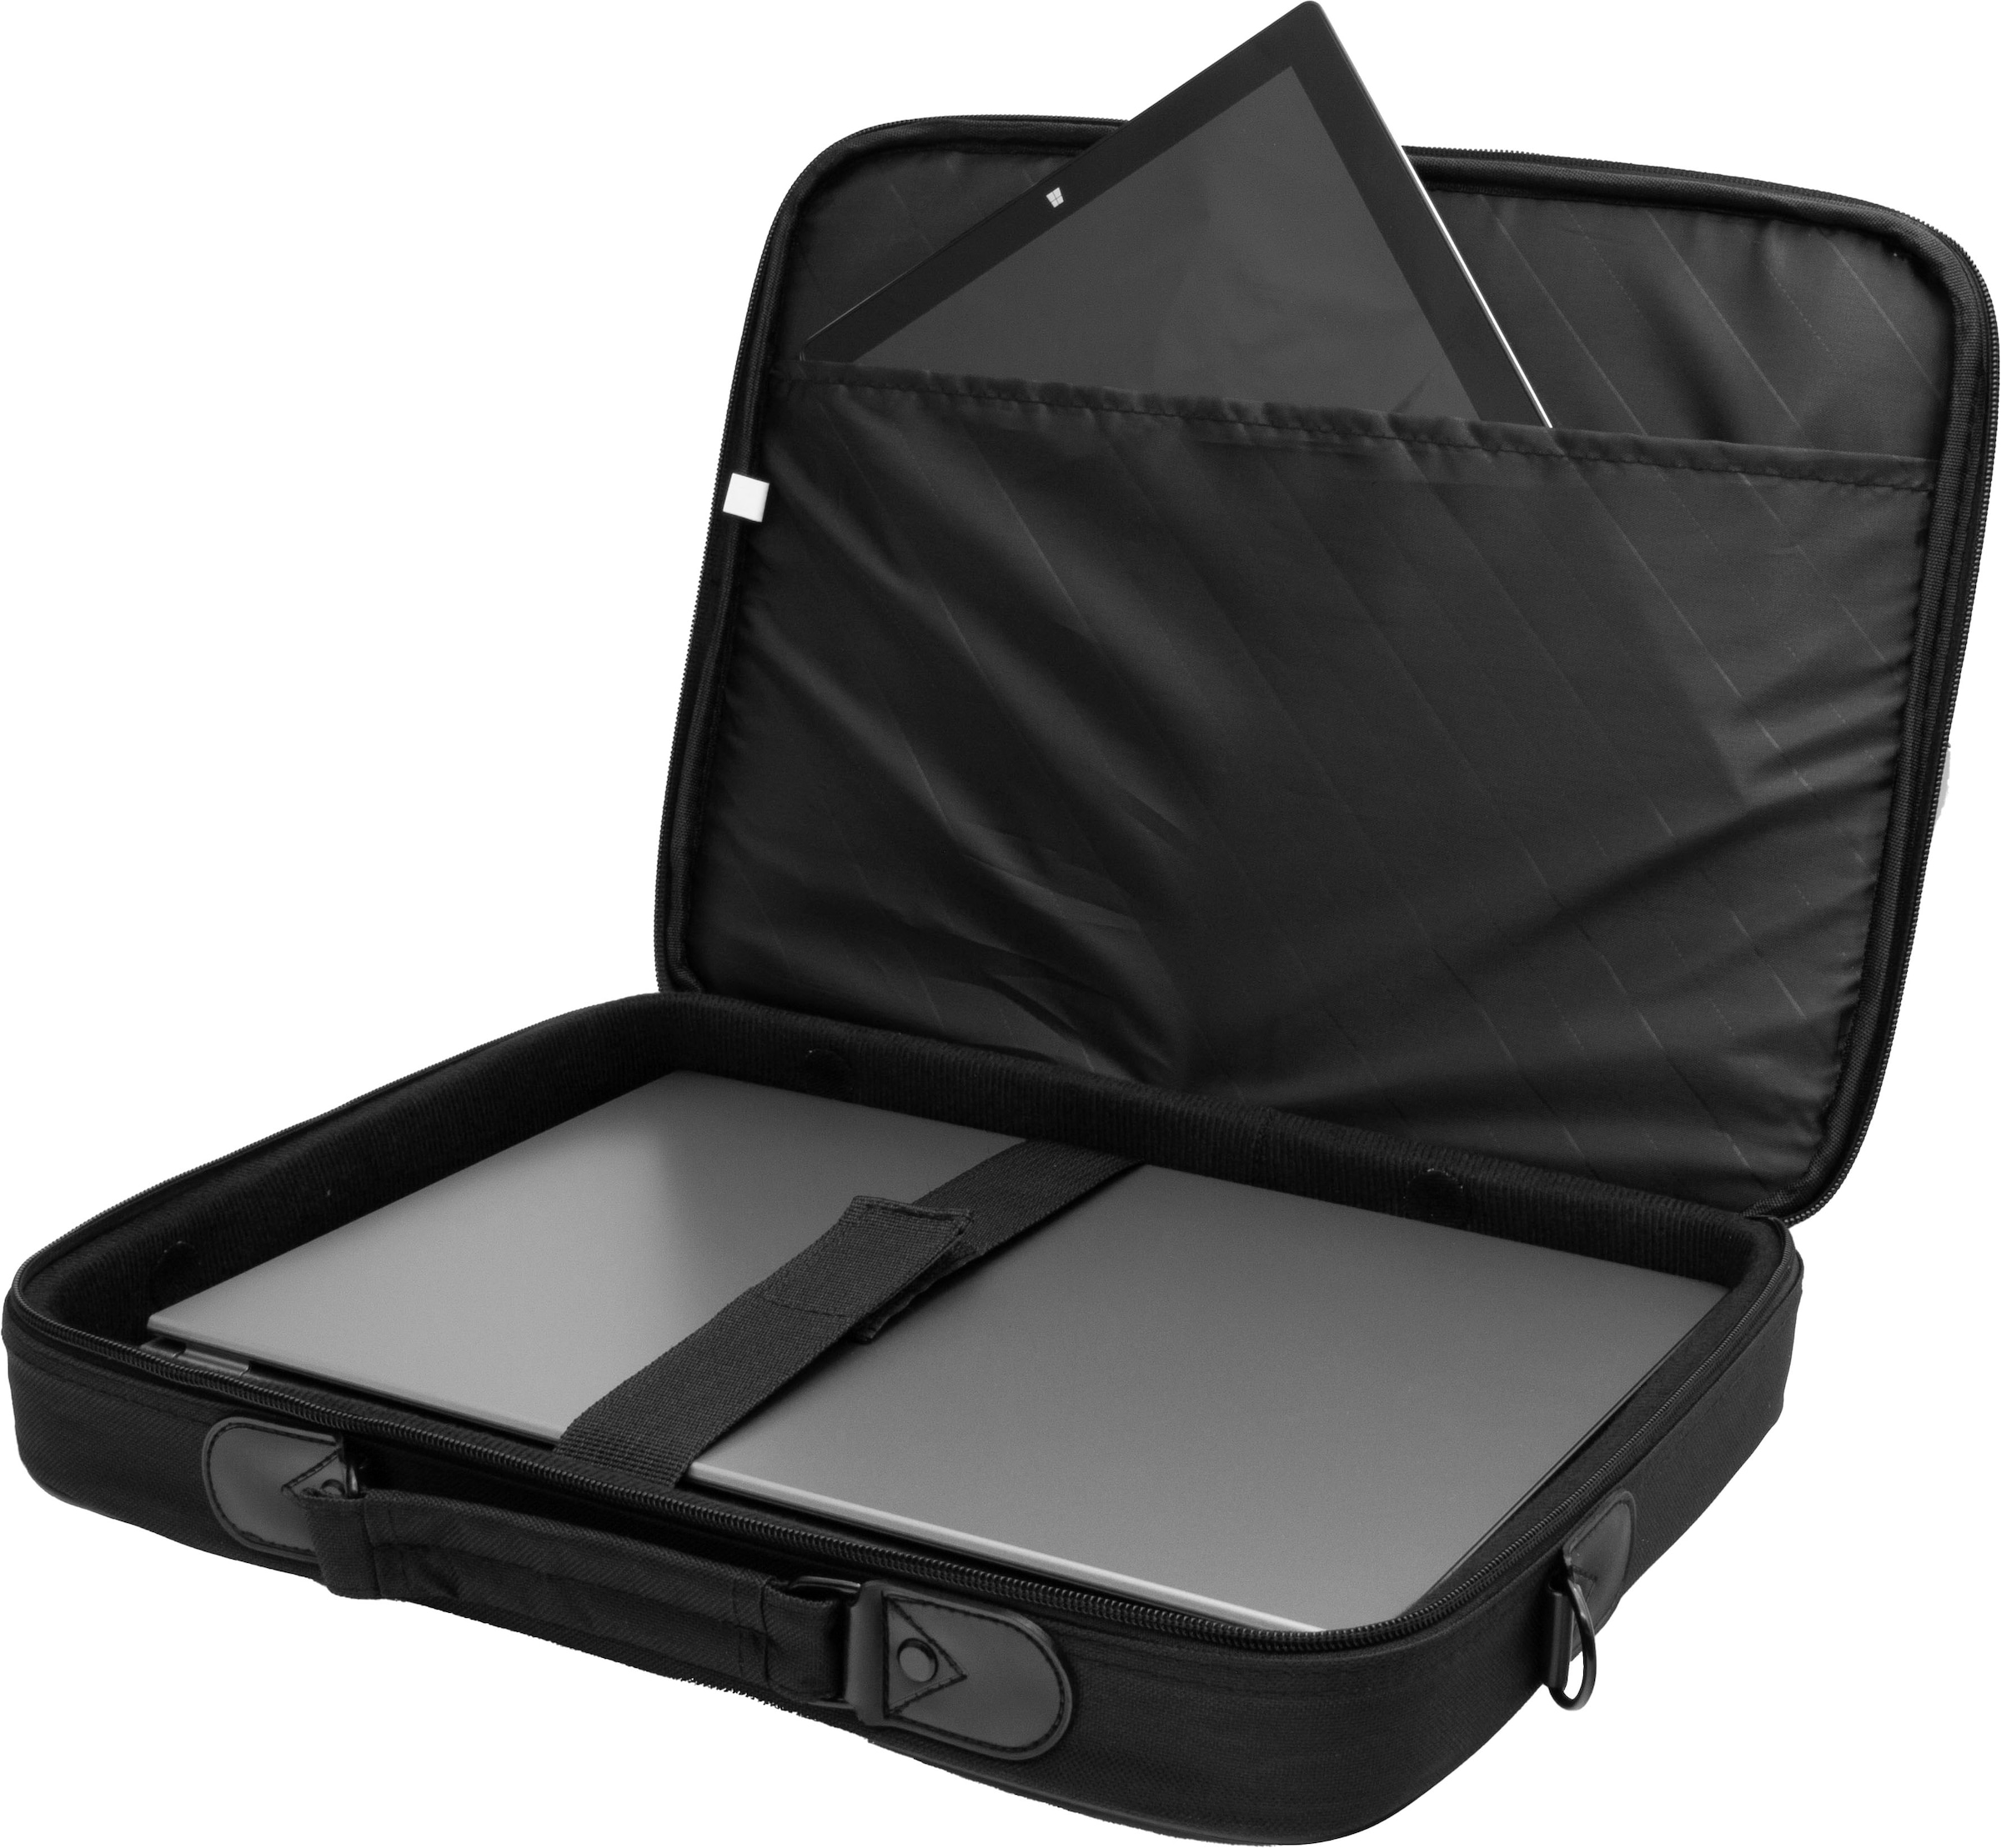 Hyrican Laptoptasche »Laptop Tasche für Notebooks bis 15,6 Zoll«, Business Computertasche, Umhängetasche, Schultertasche, Notebooktasche